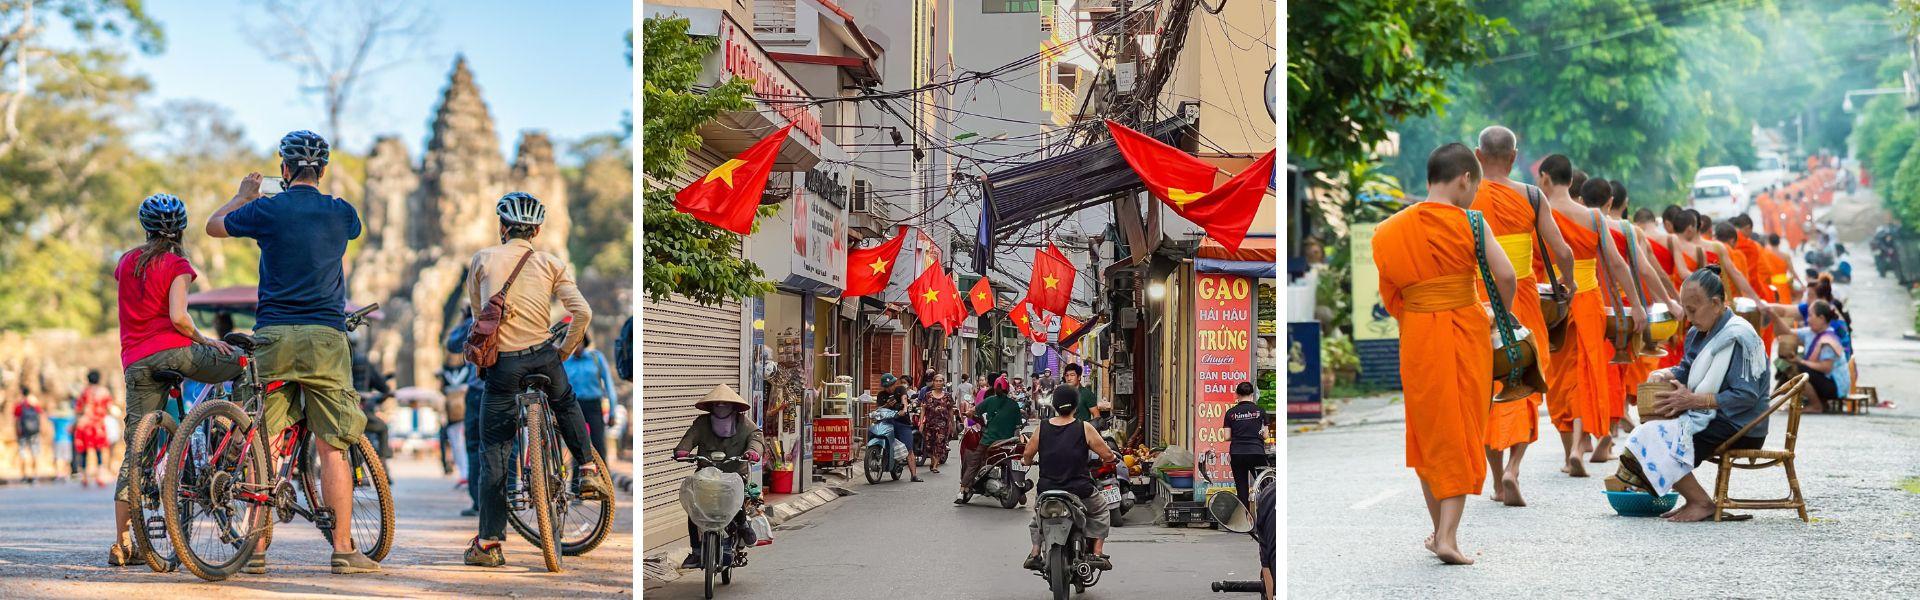 Viaggio in Vietnam, Cambogia e Laos